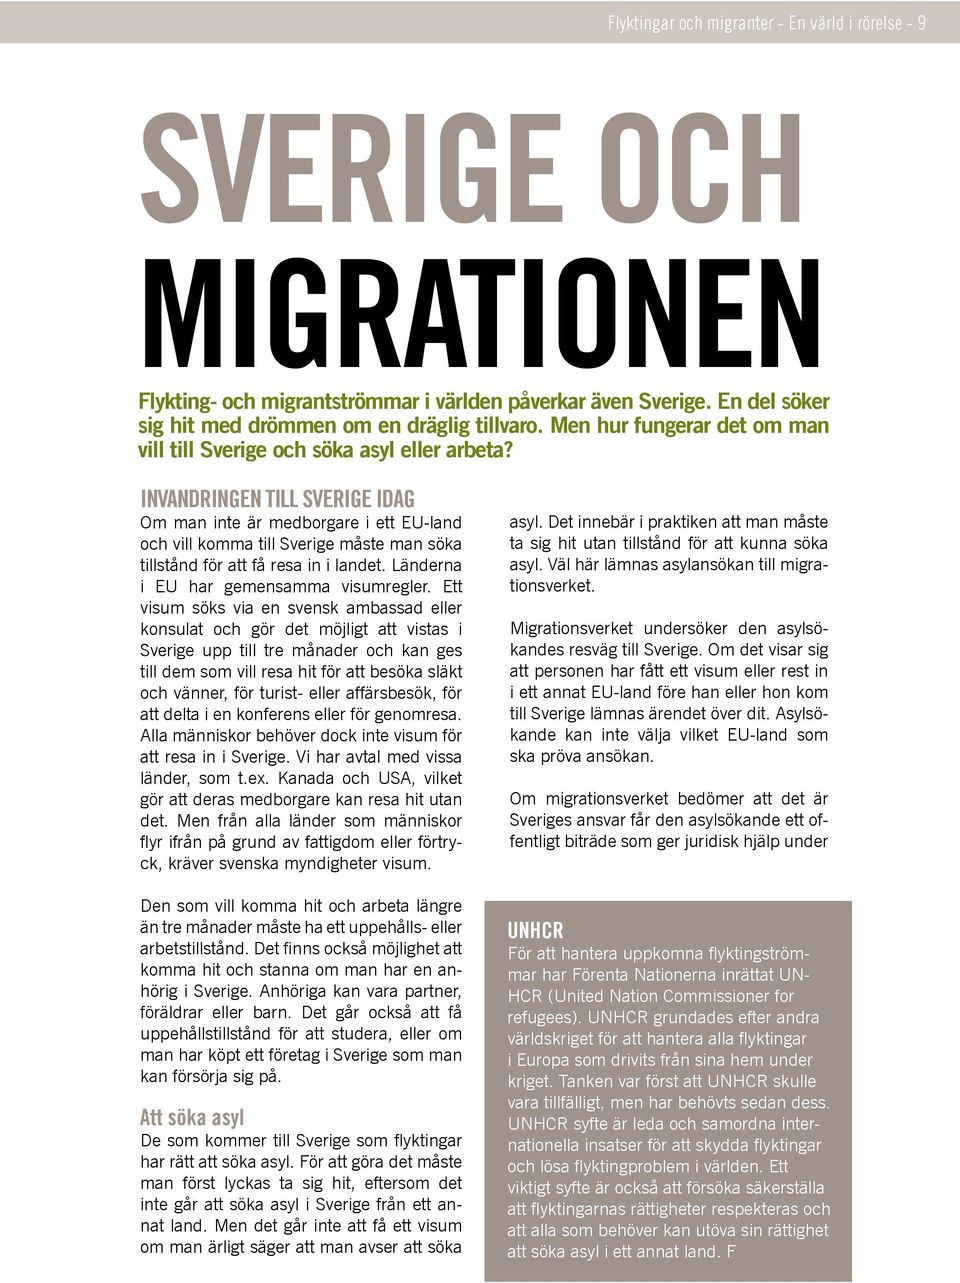 Invandringen till Sverige idag Om man inte är medborgare i ett EU-land och vill komma till Sverige måste man söka tillstånd för att få resa in i landet. Länderna i EU har gemensamma visumregler.